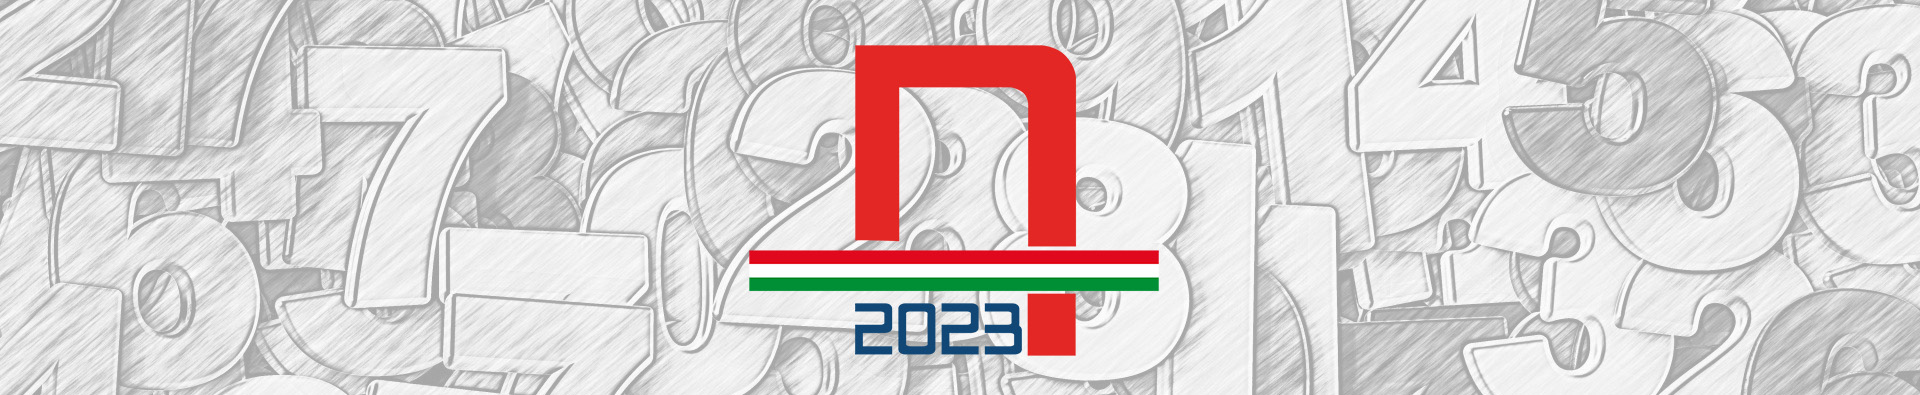 NUMERI 2022